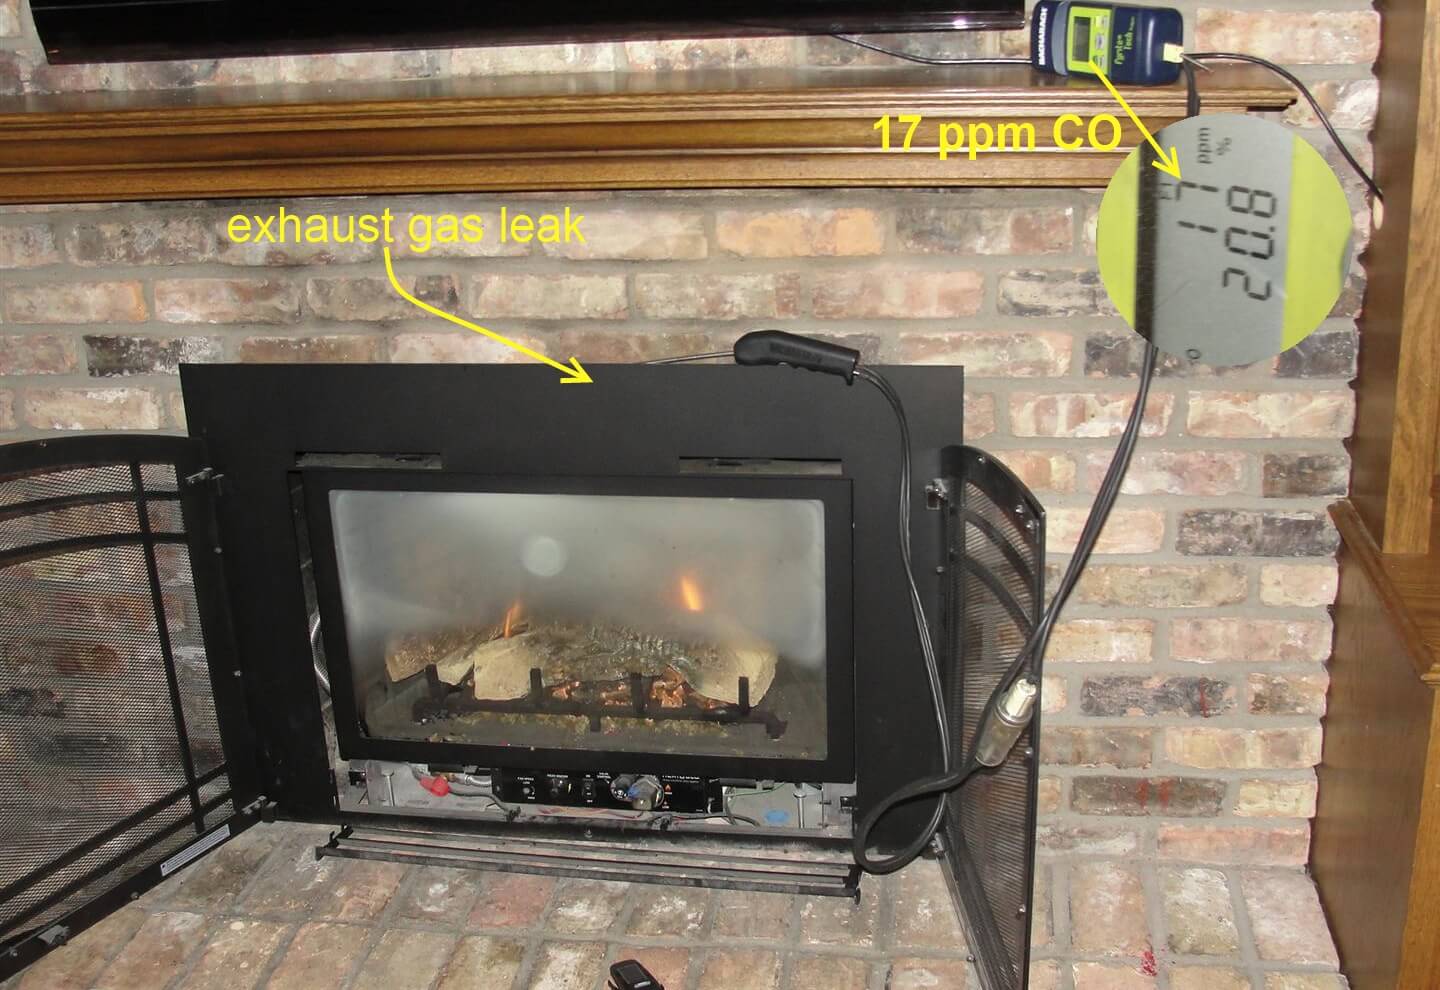 Co Alarms, Vented Gas Fireplace Carbon Monoxide